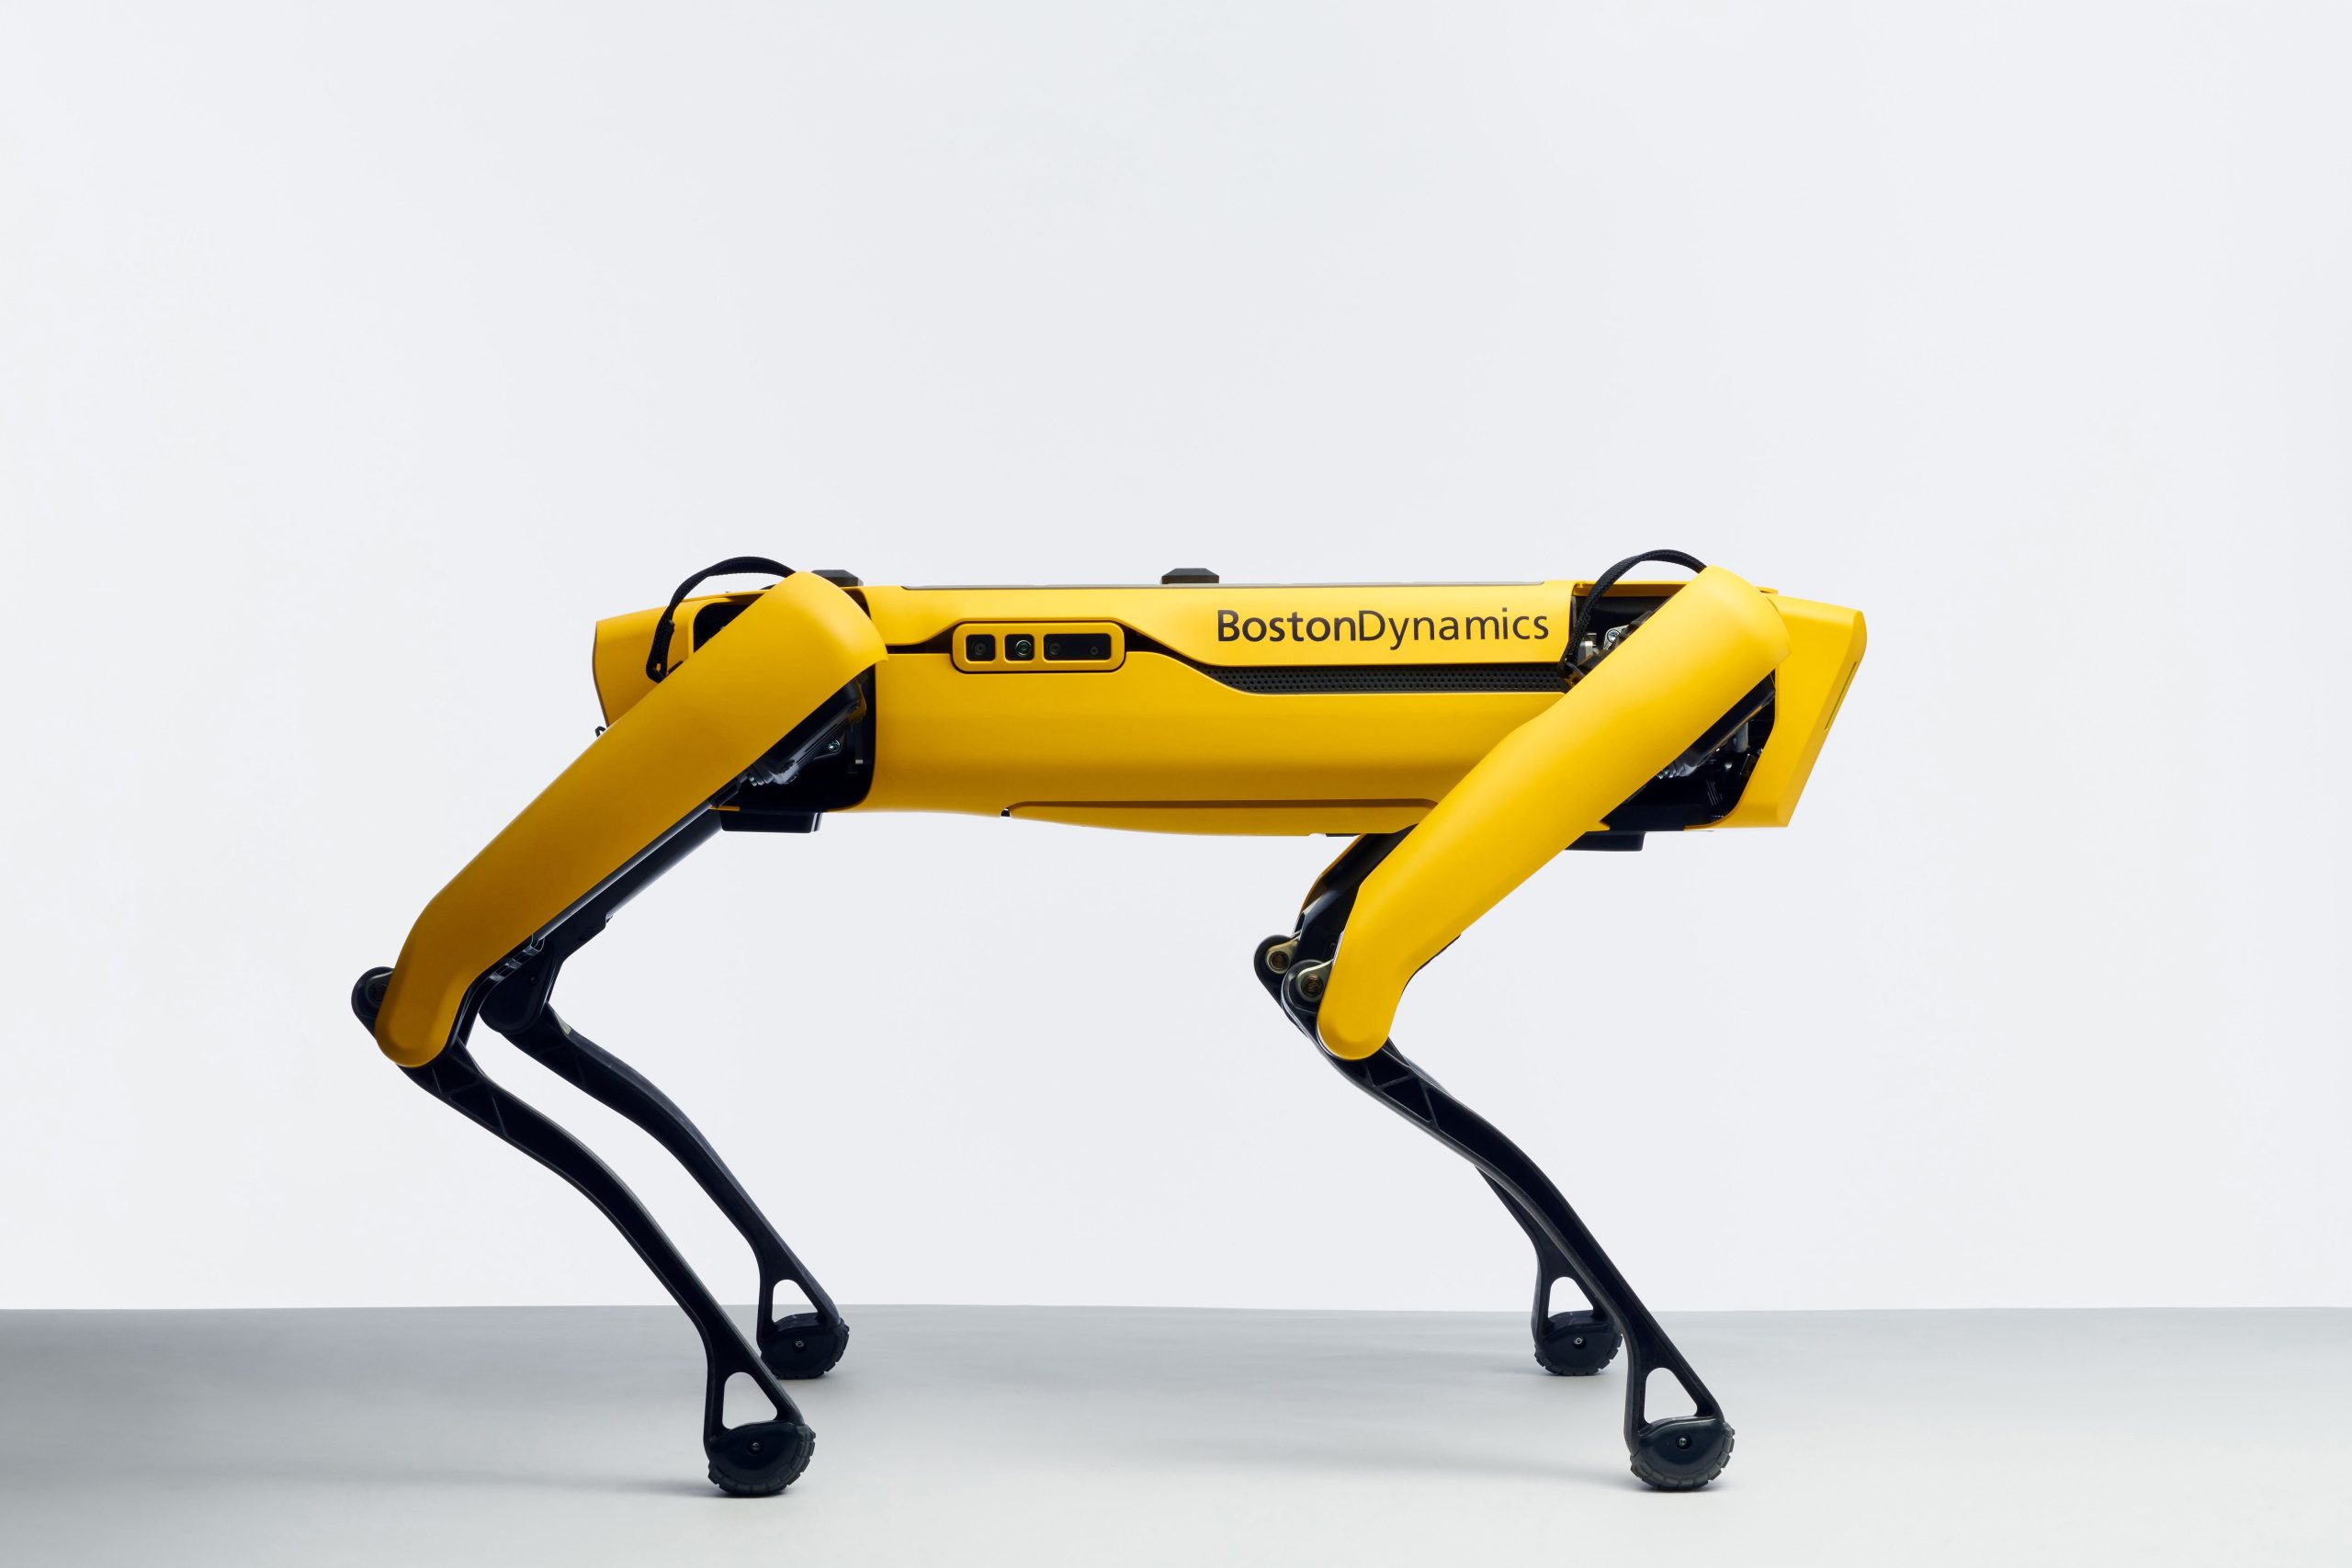 İTÜ Robot (İTÜRO) Olimpiyatlarında Boston Dynamics Spot köpek de olacak.